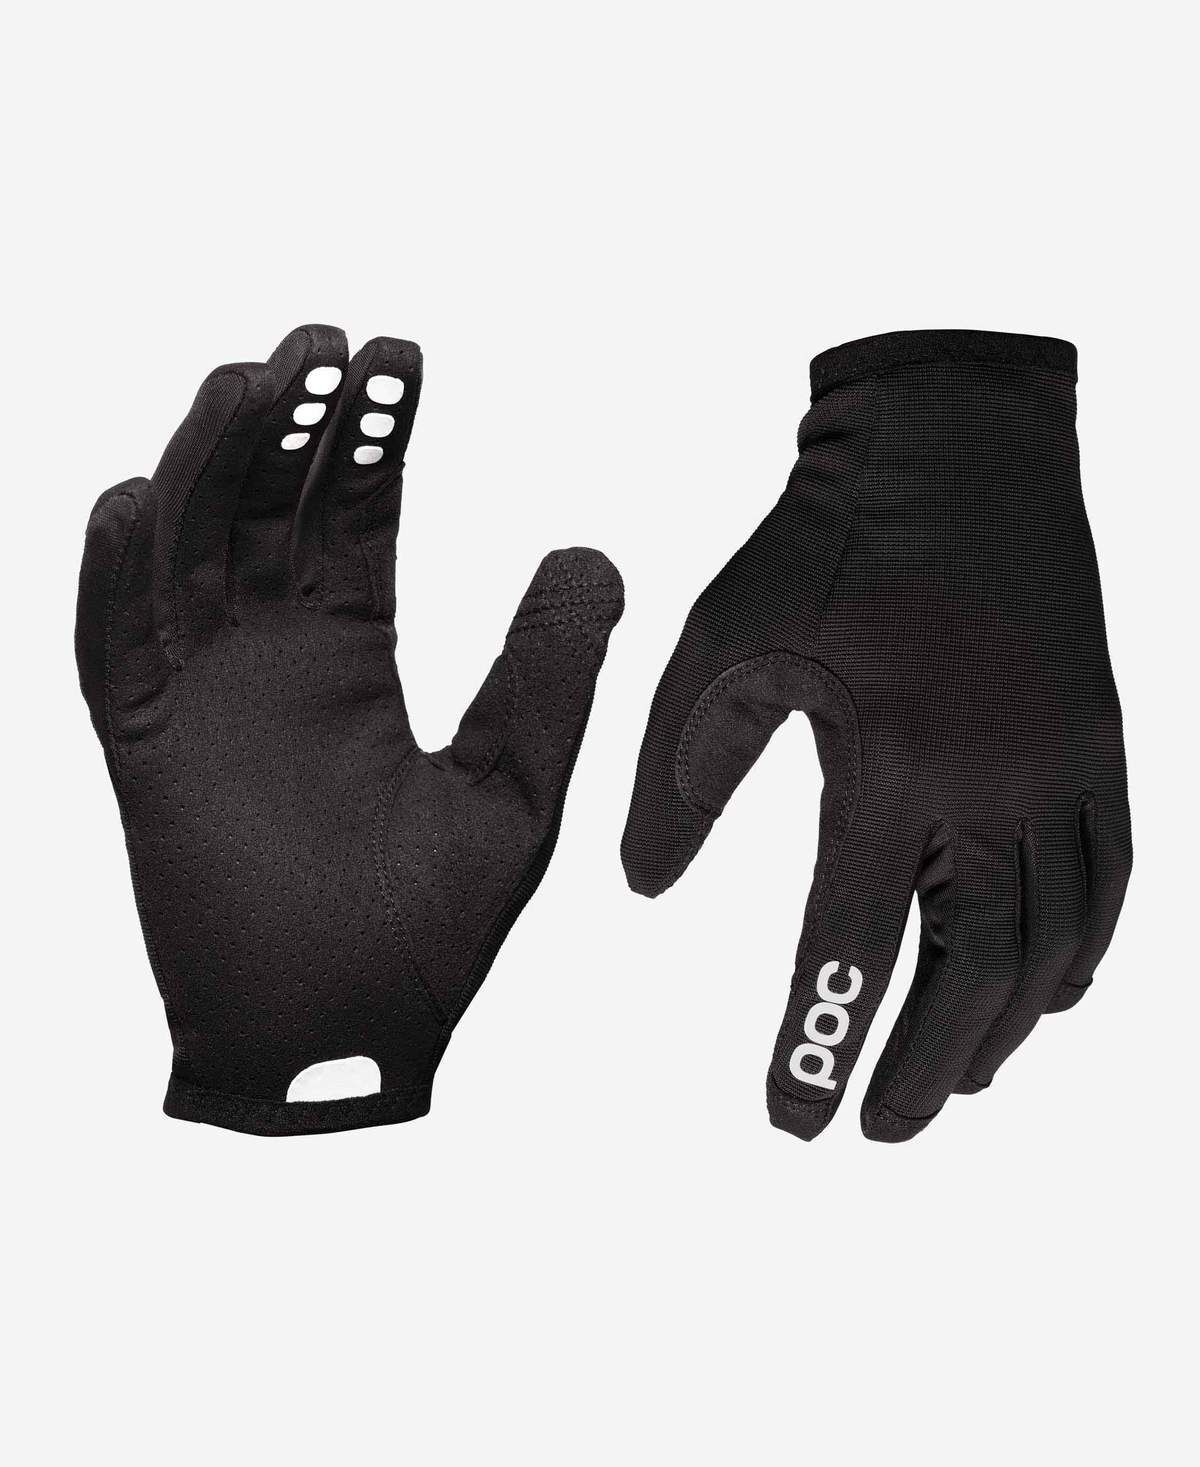 Poc Resistance Enduro Glove - Fietshandschoenen